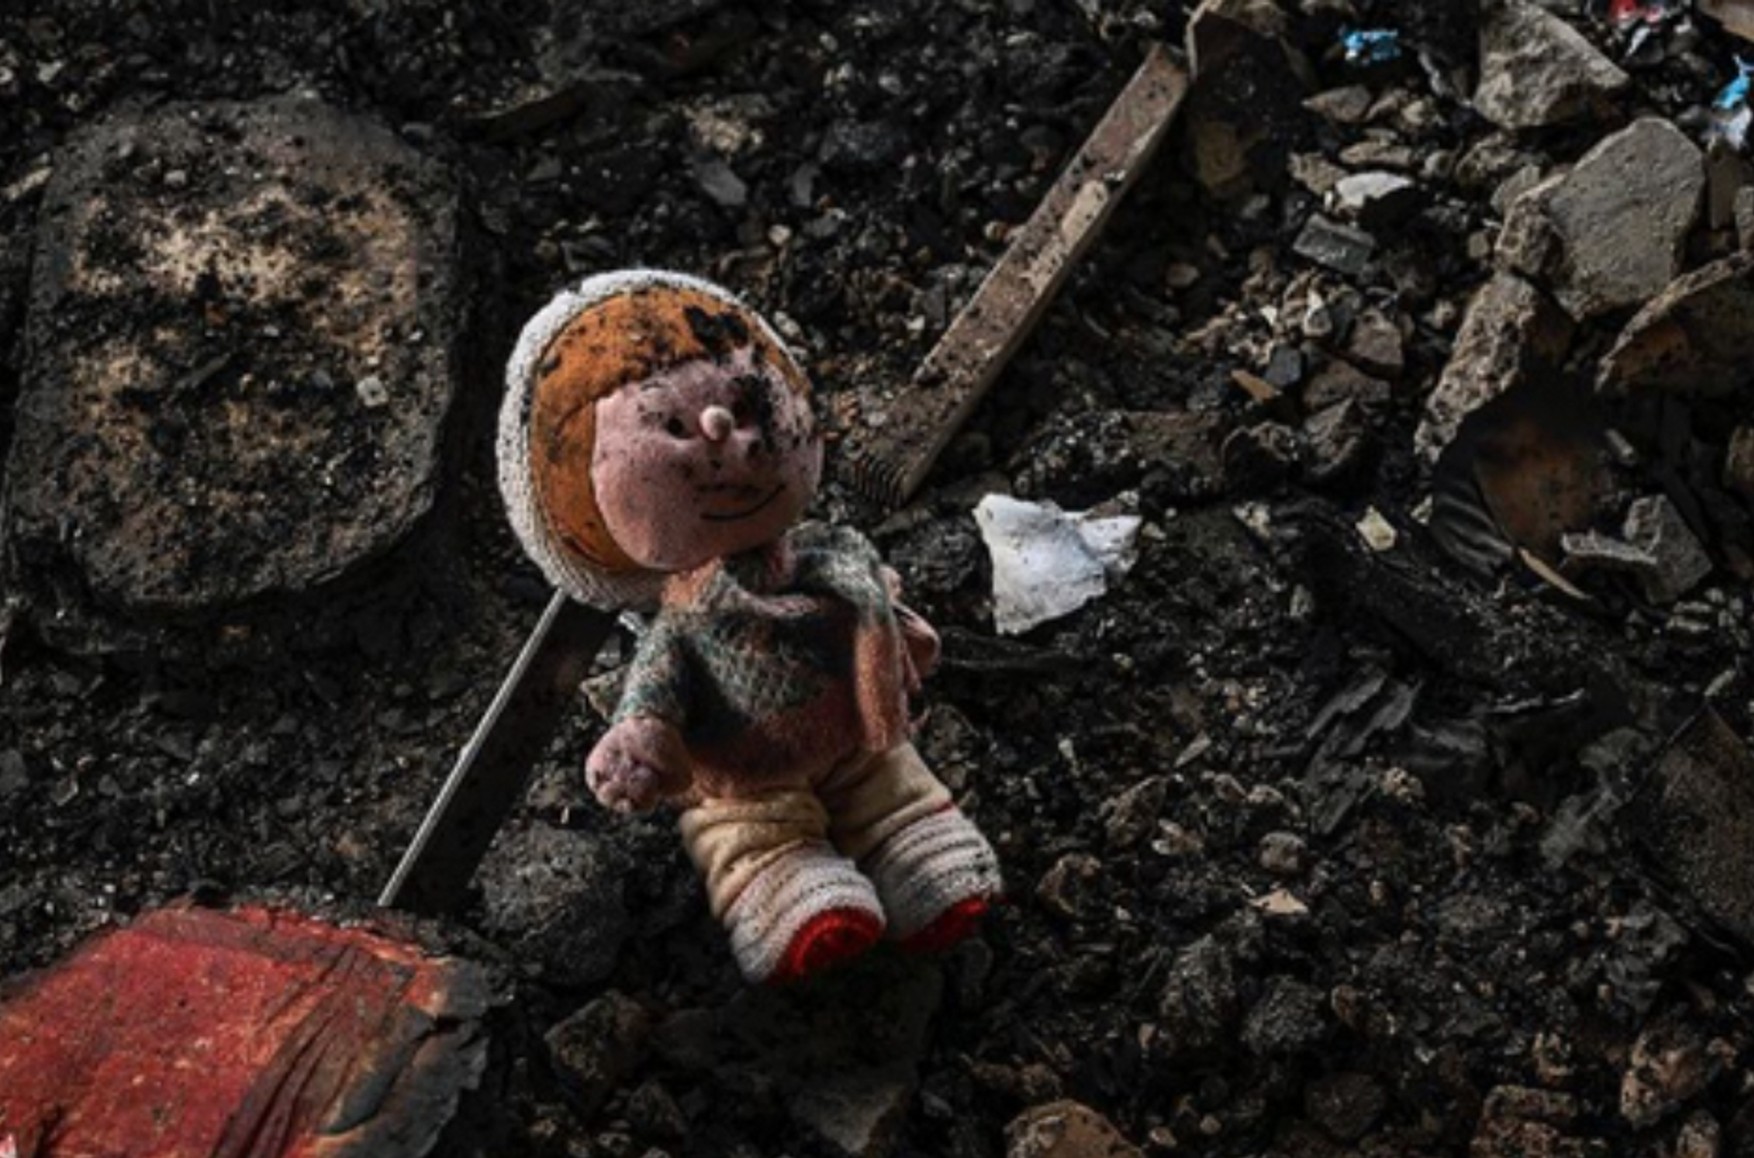 464 ребенка погибли в Украине во время войны — Генпрокуратура Украины